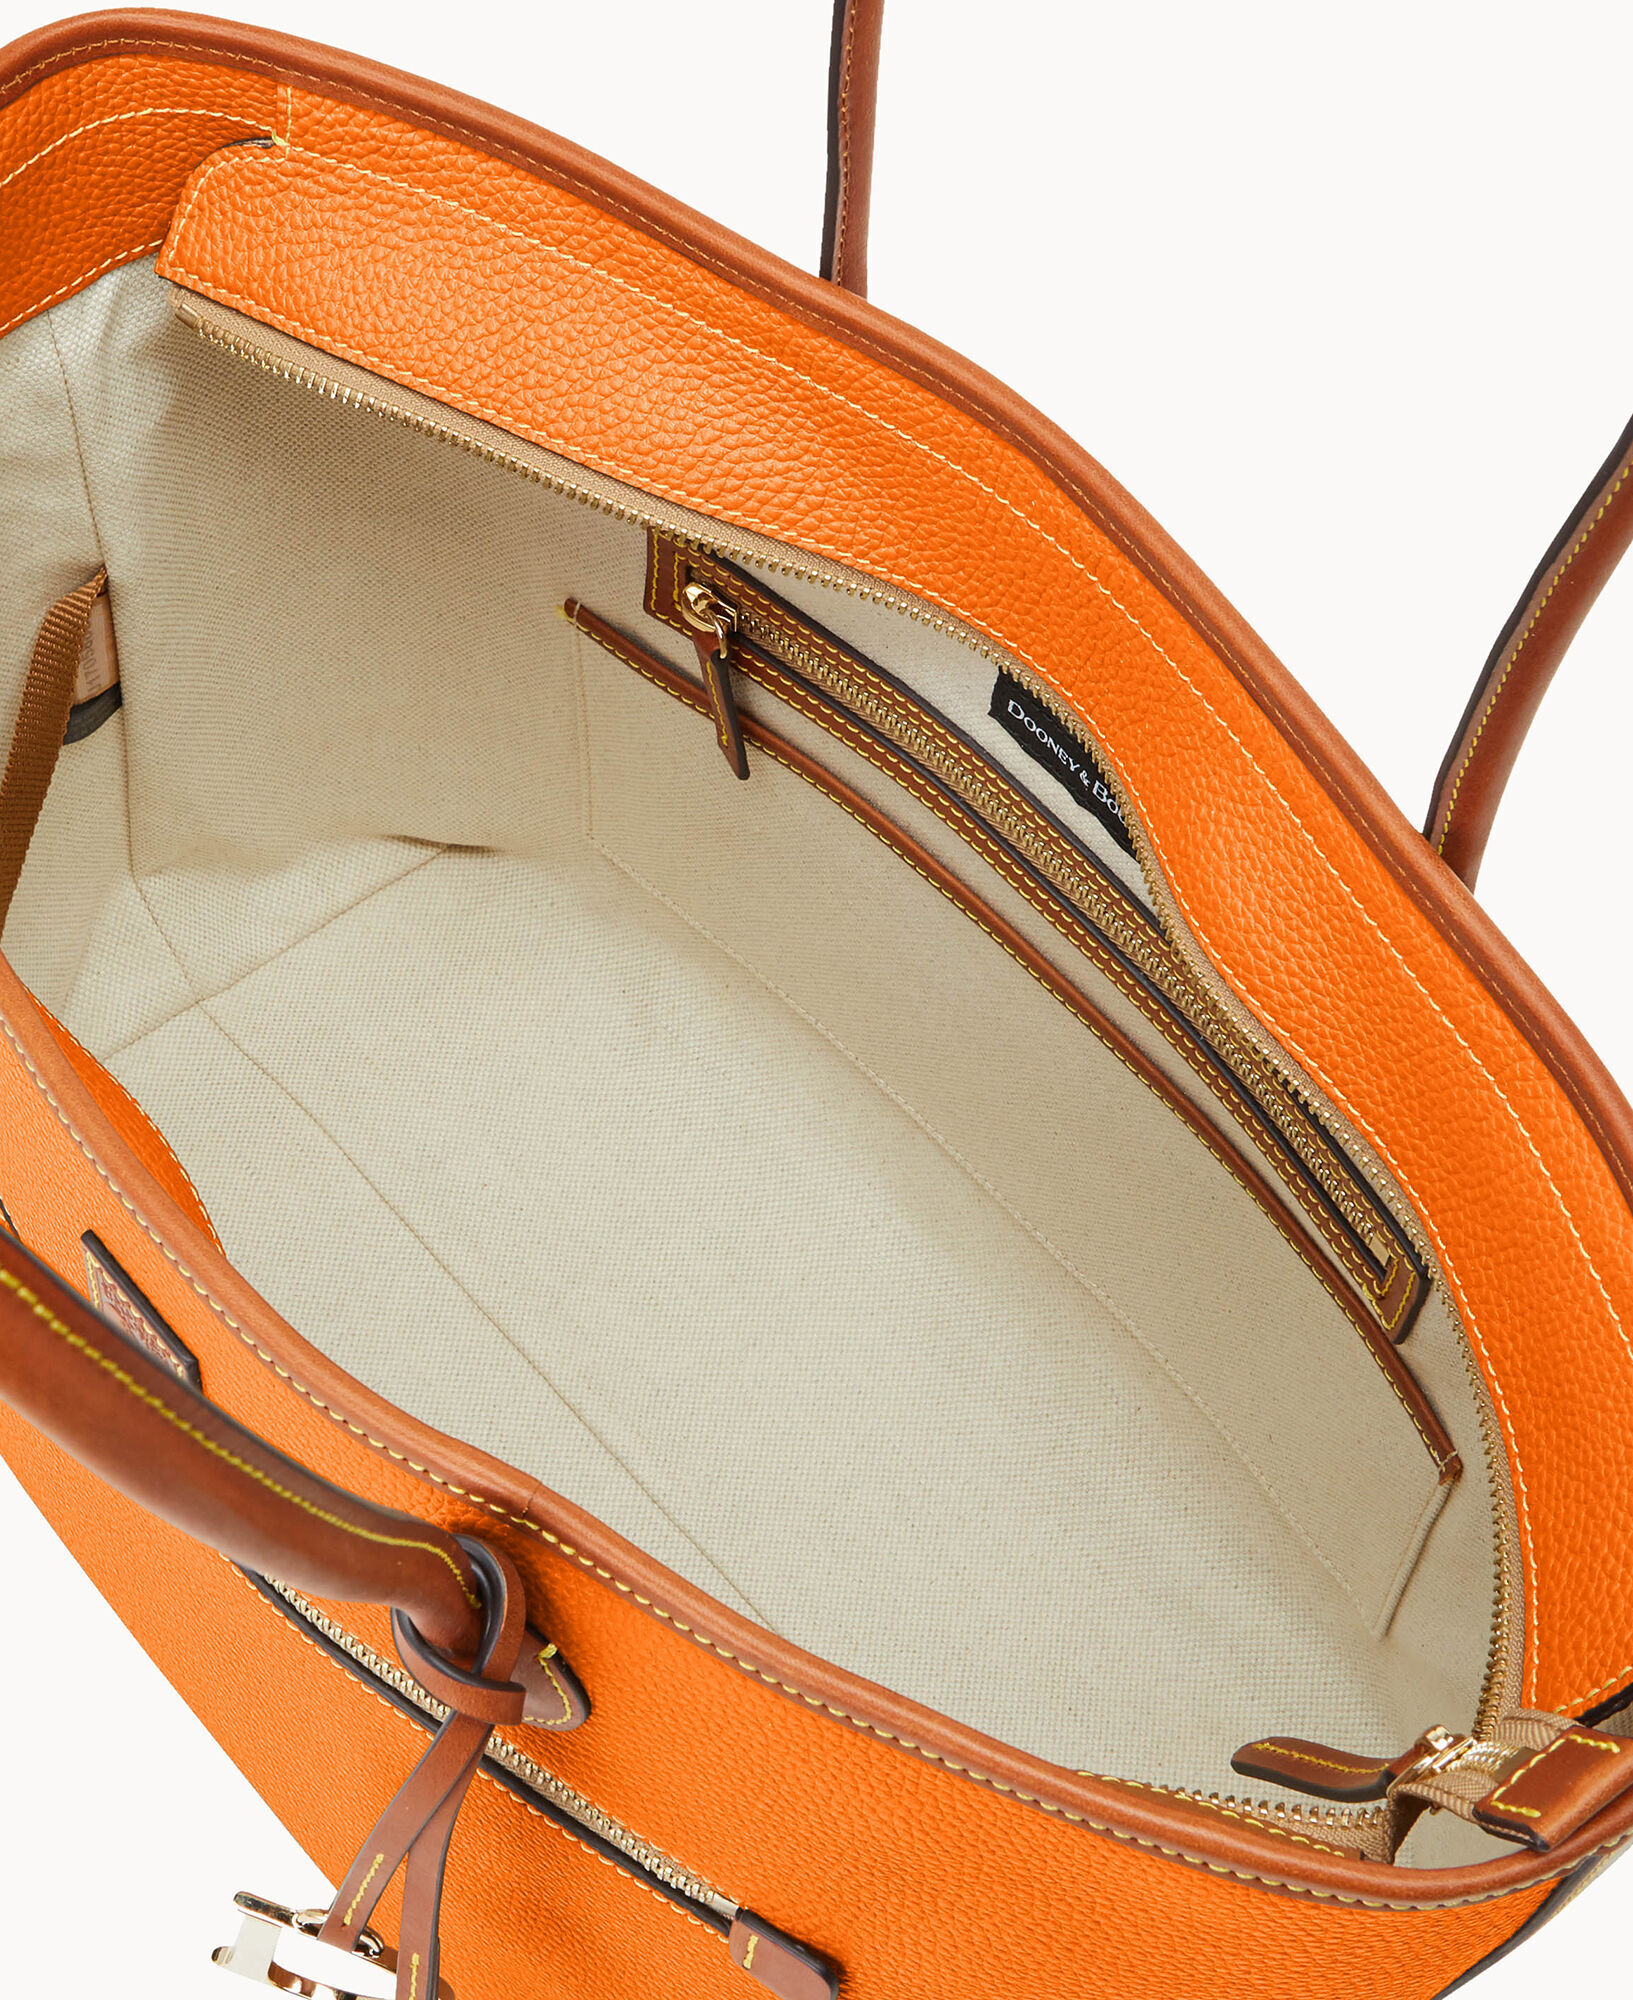 Dooney & Bourke Women's Tote Bags - Orange